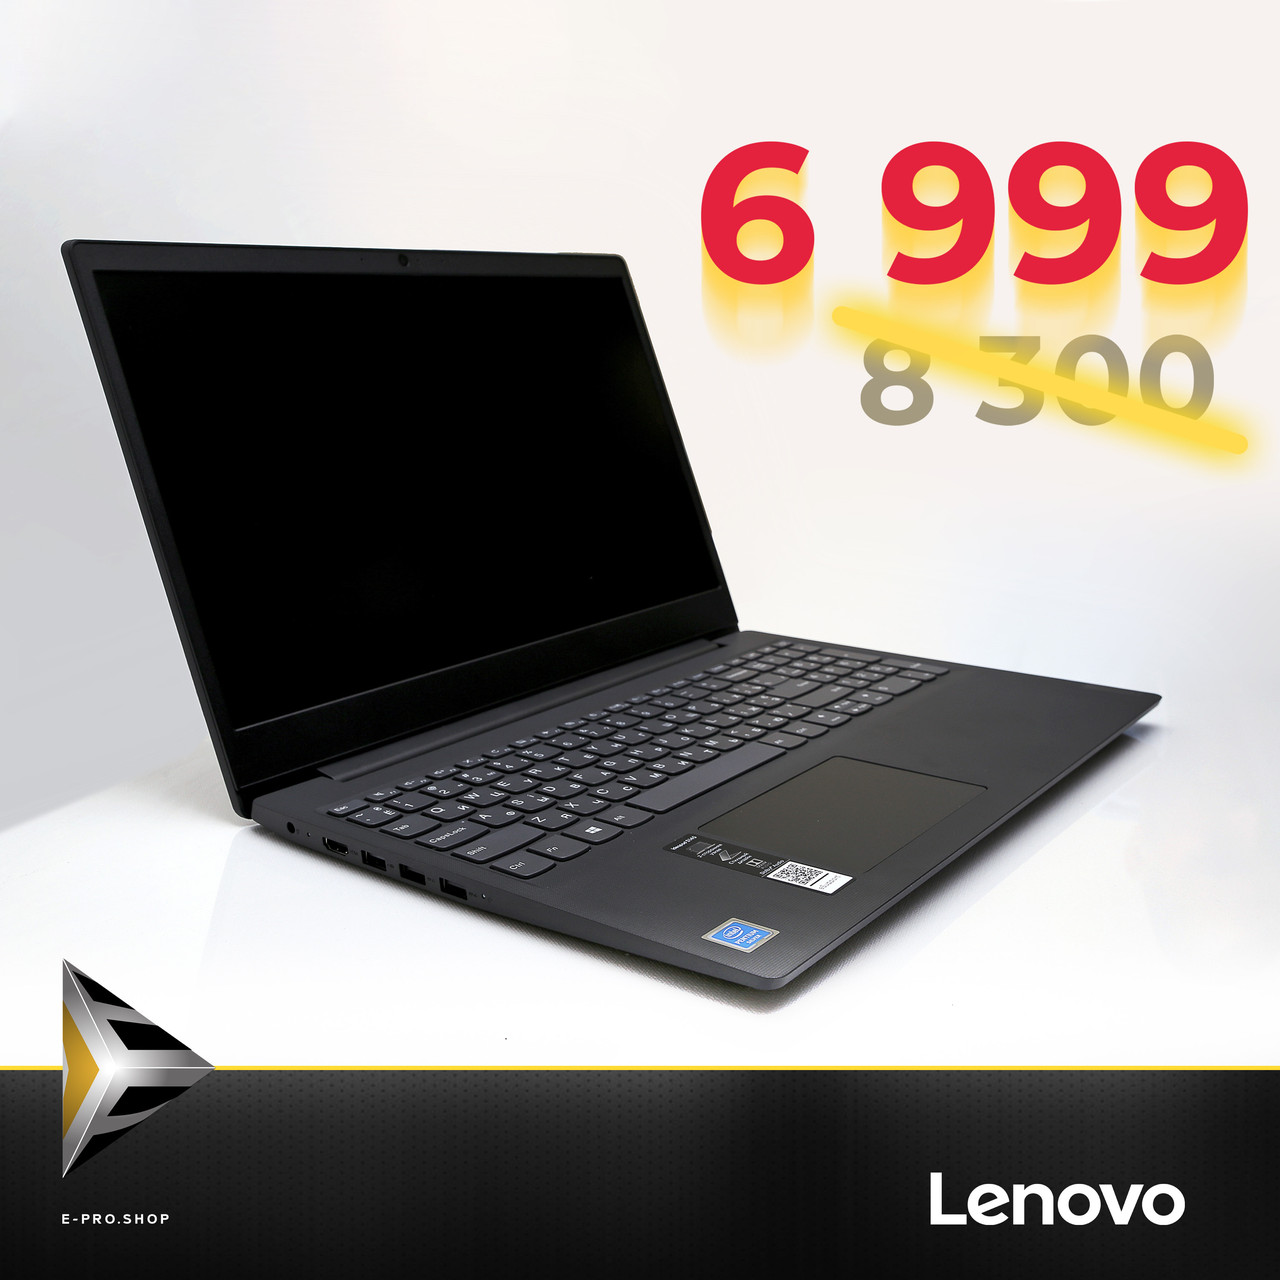 Ноутбук Lenovo Ideapad S145 Цена